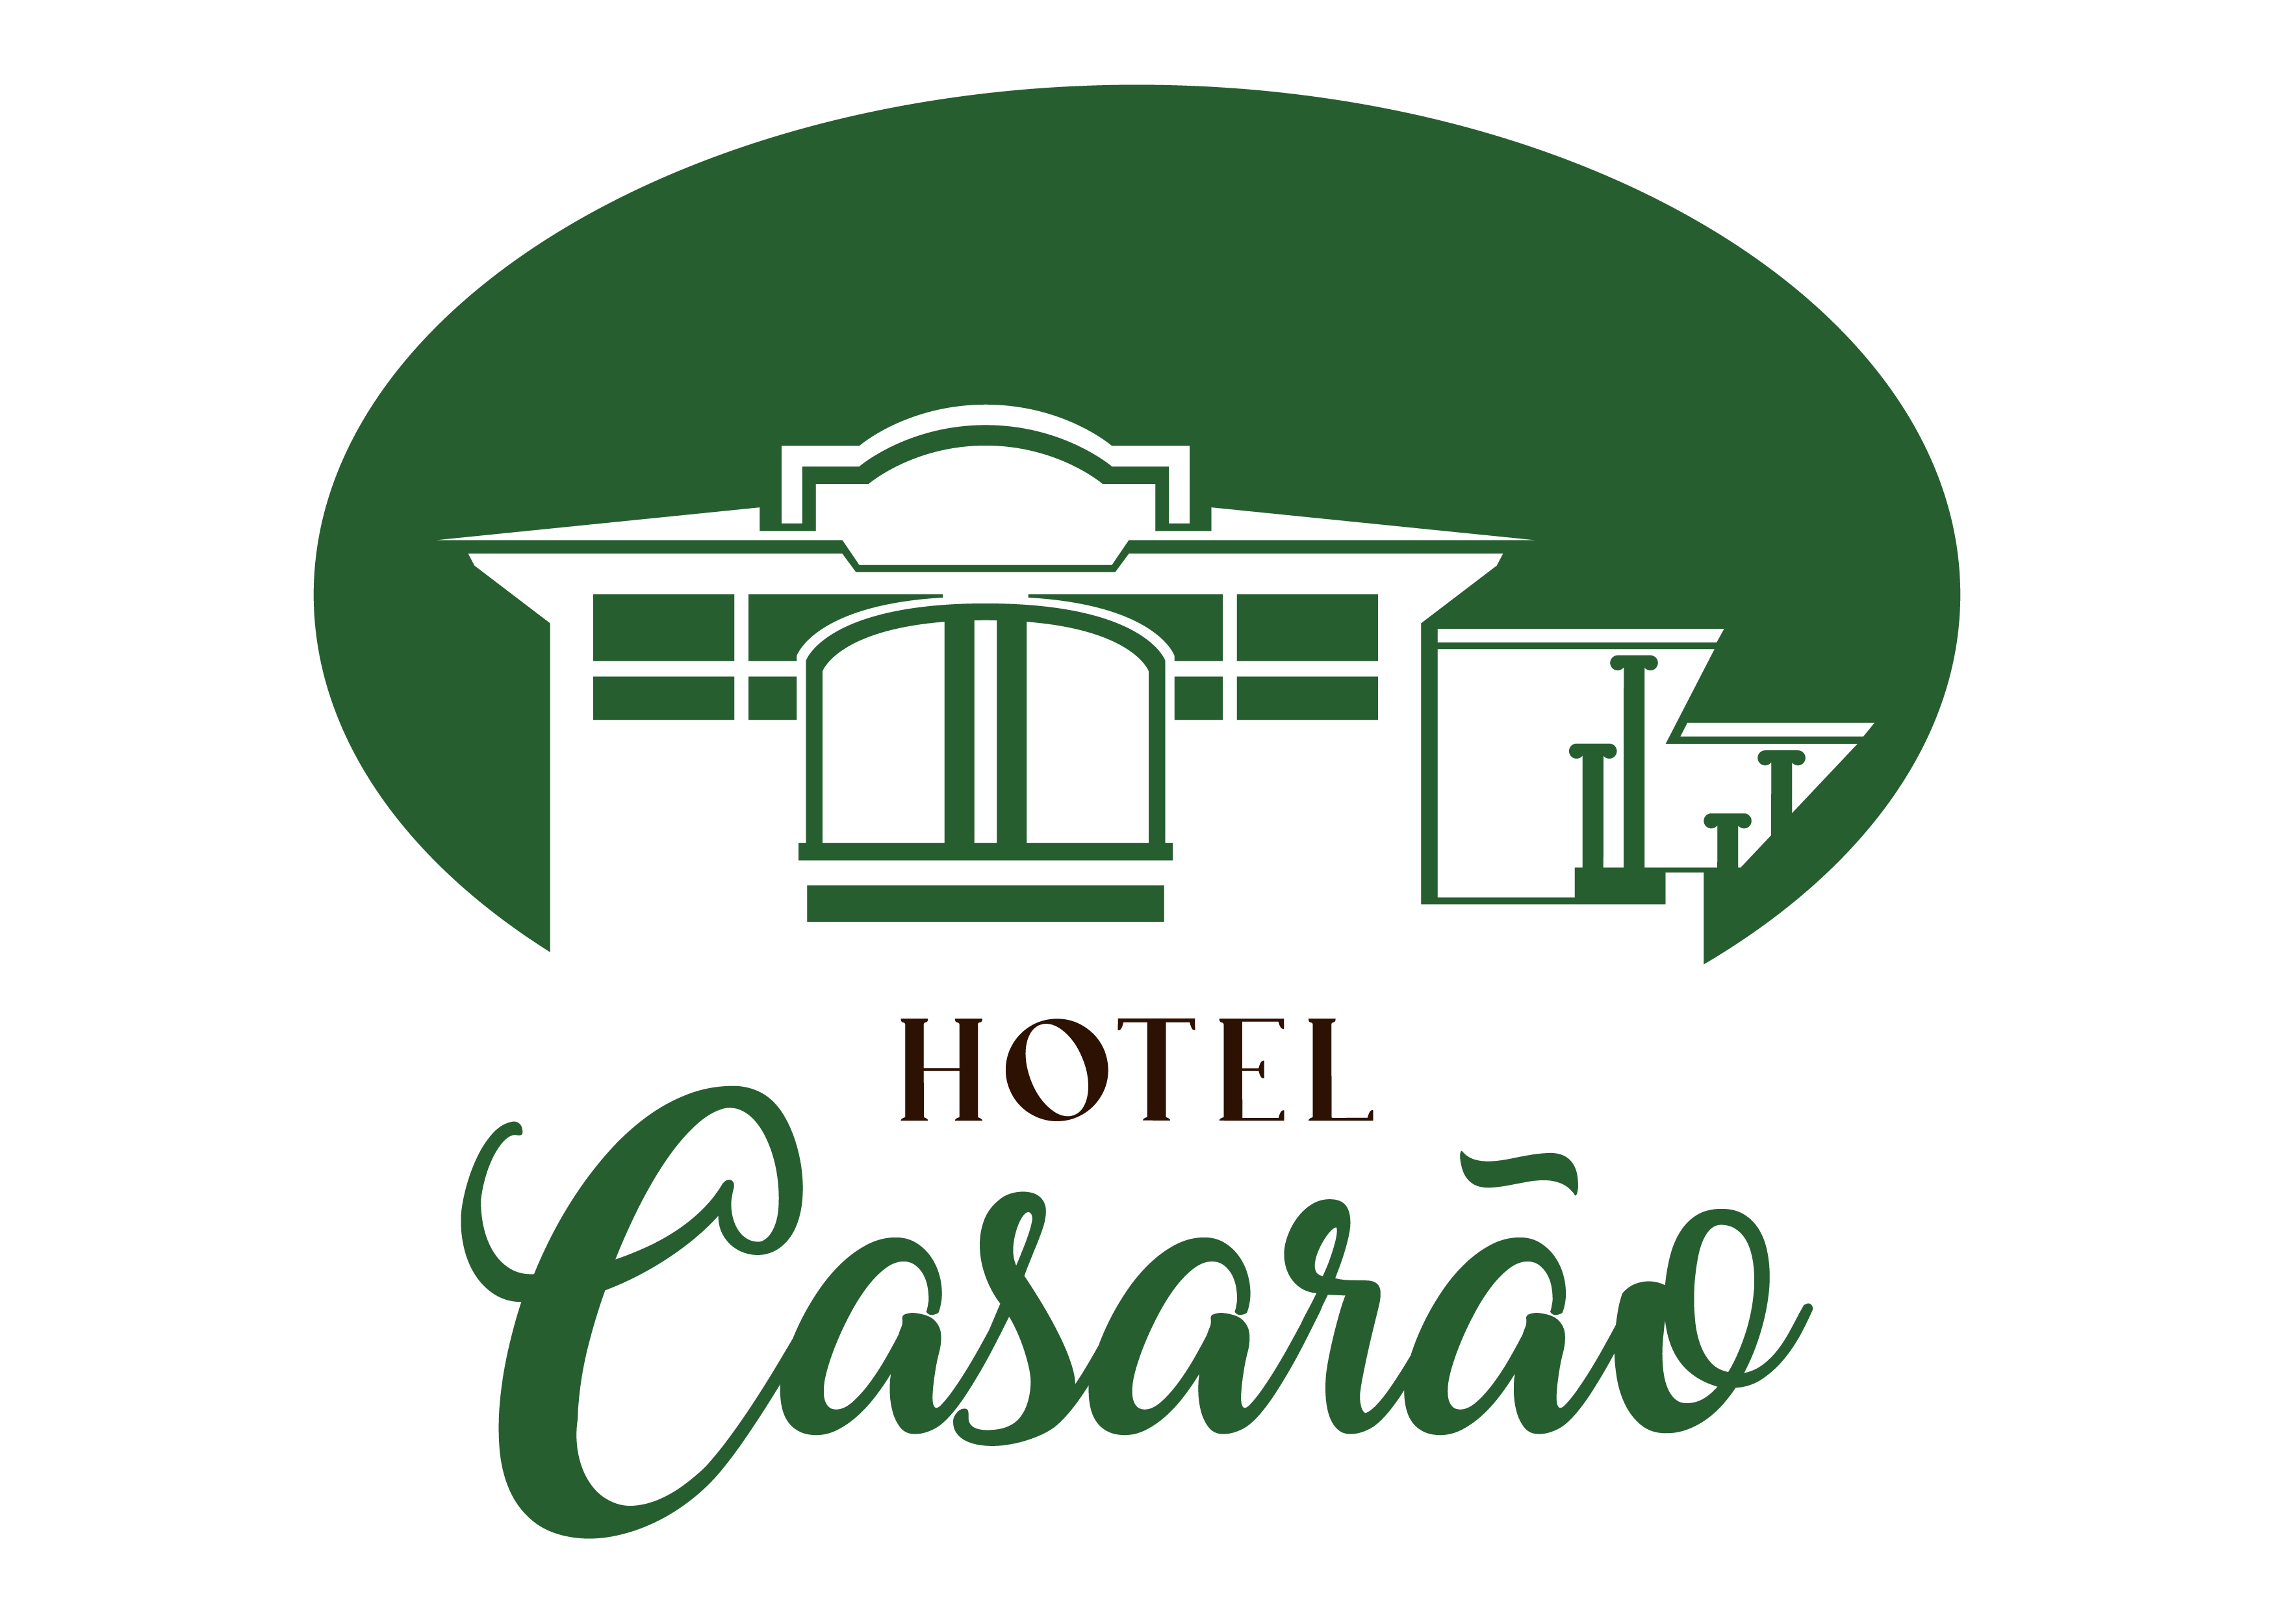 Hotel Casarão